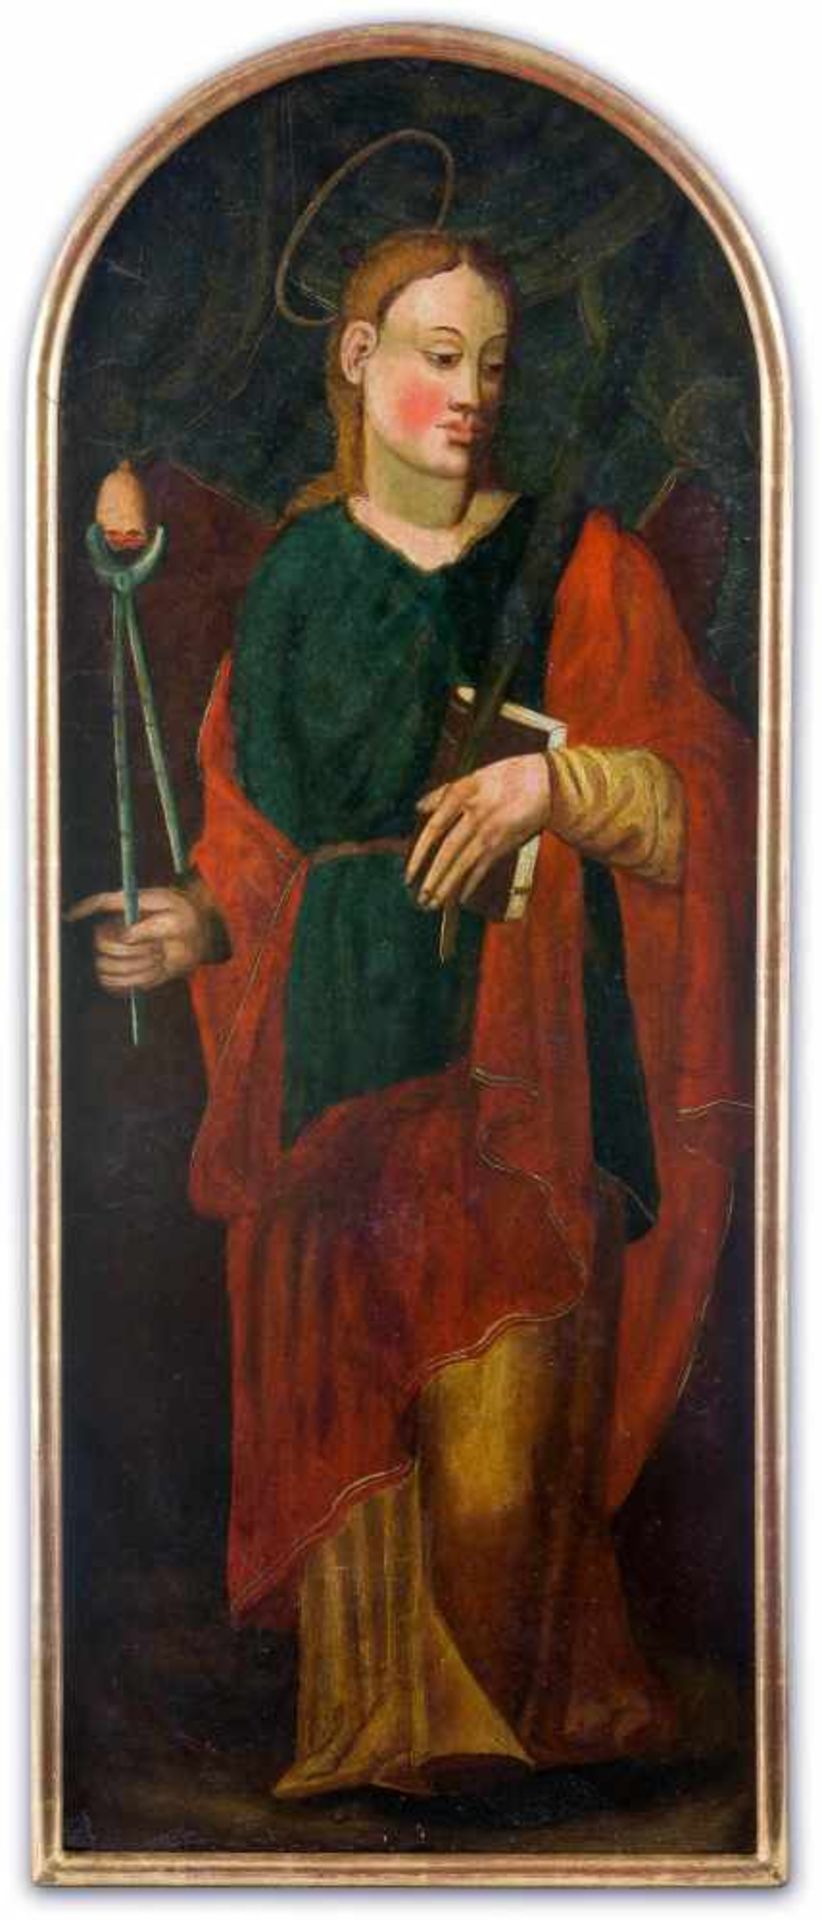 Bologneser Maler 17. Jh.Santa ApolloniaHeilige für Zahnleiden. Stehend, in der rechten Hand Zange